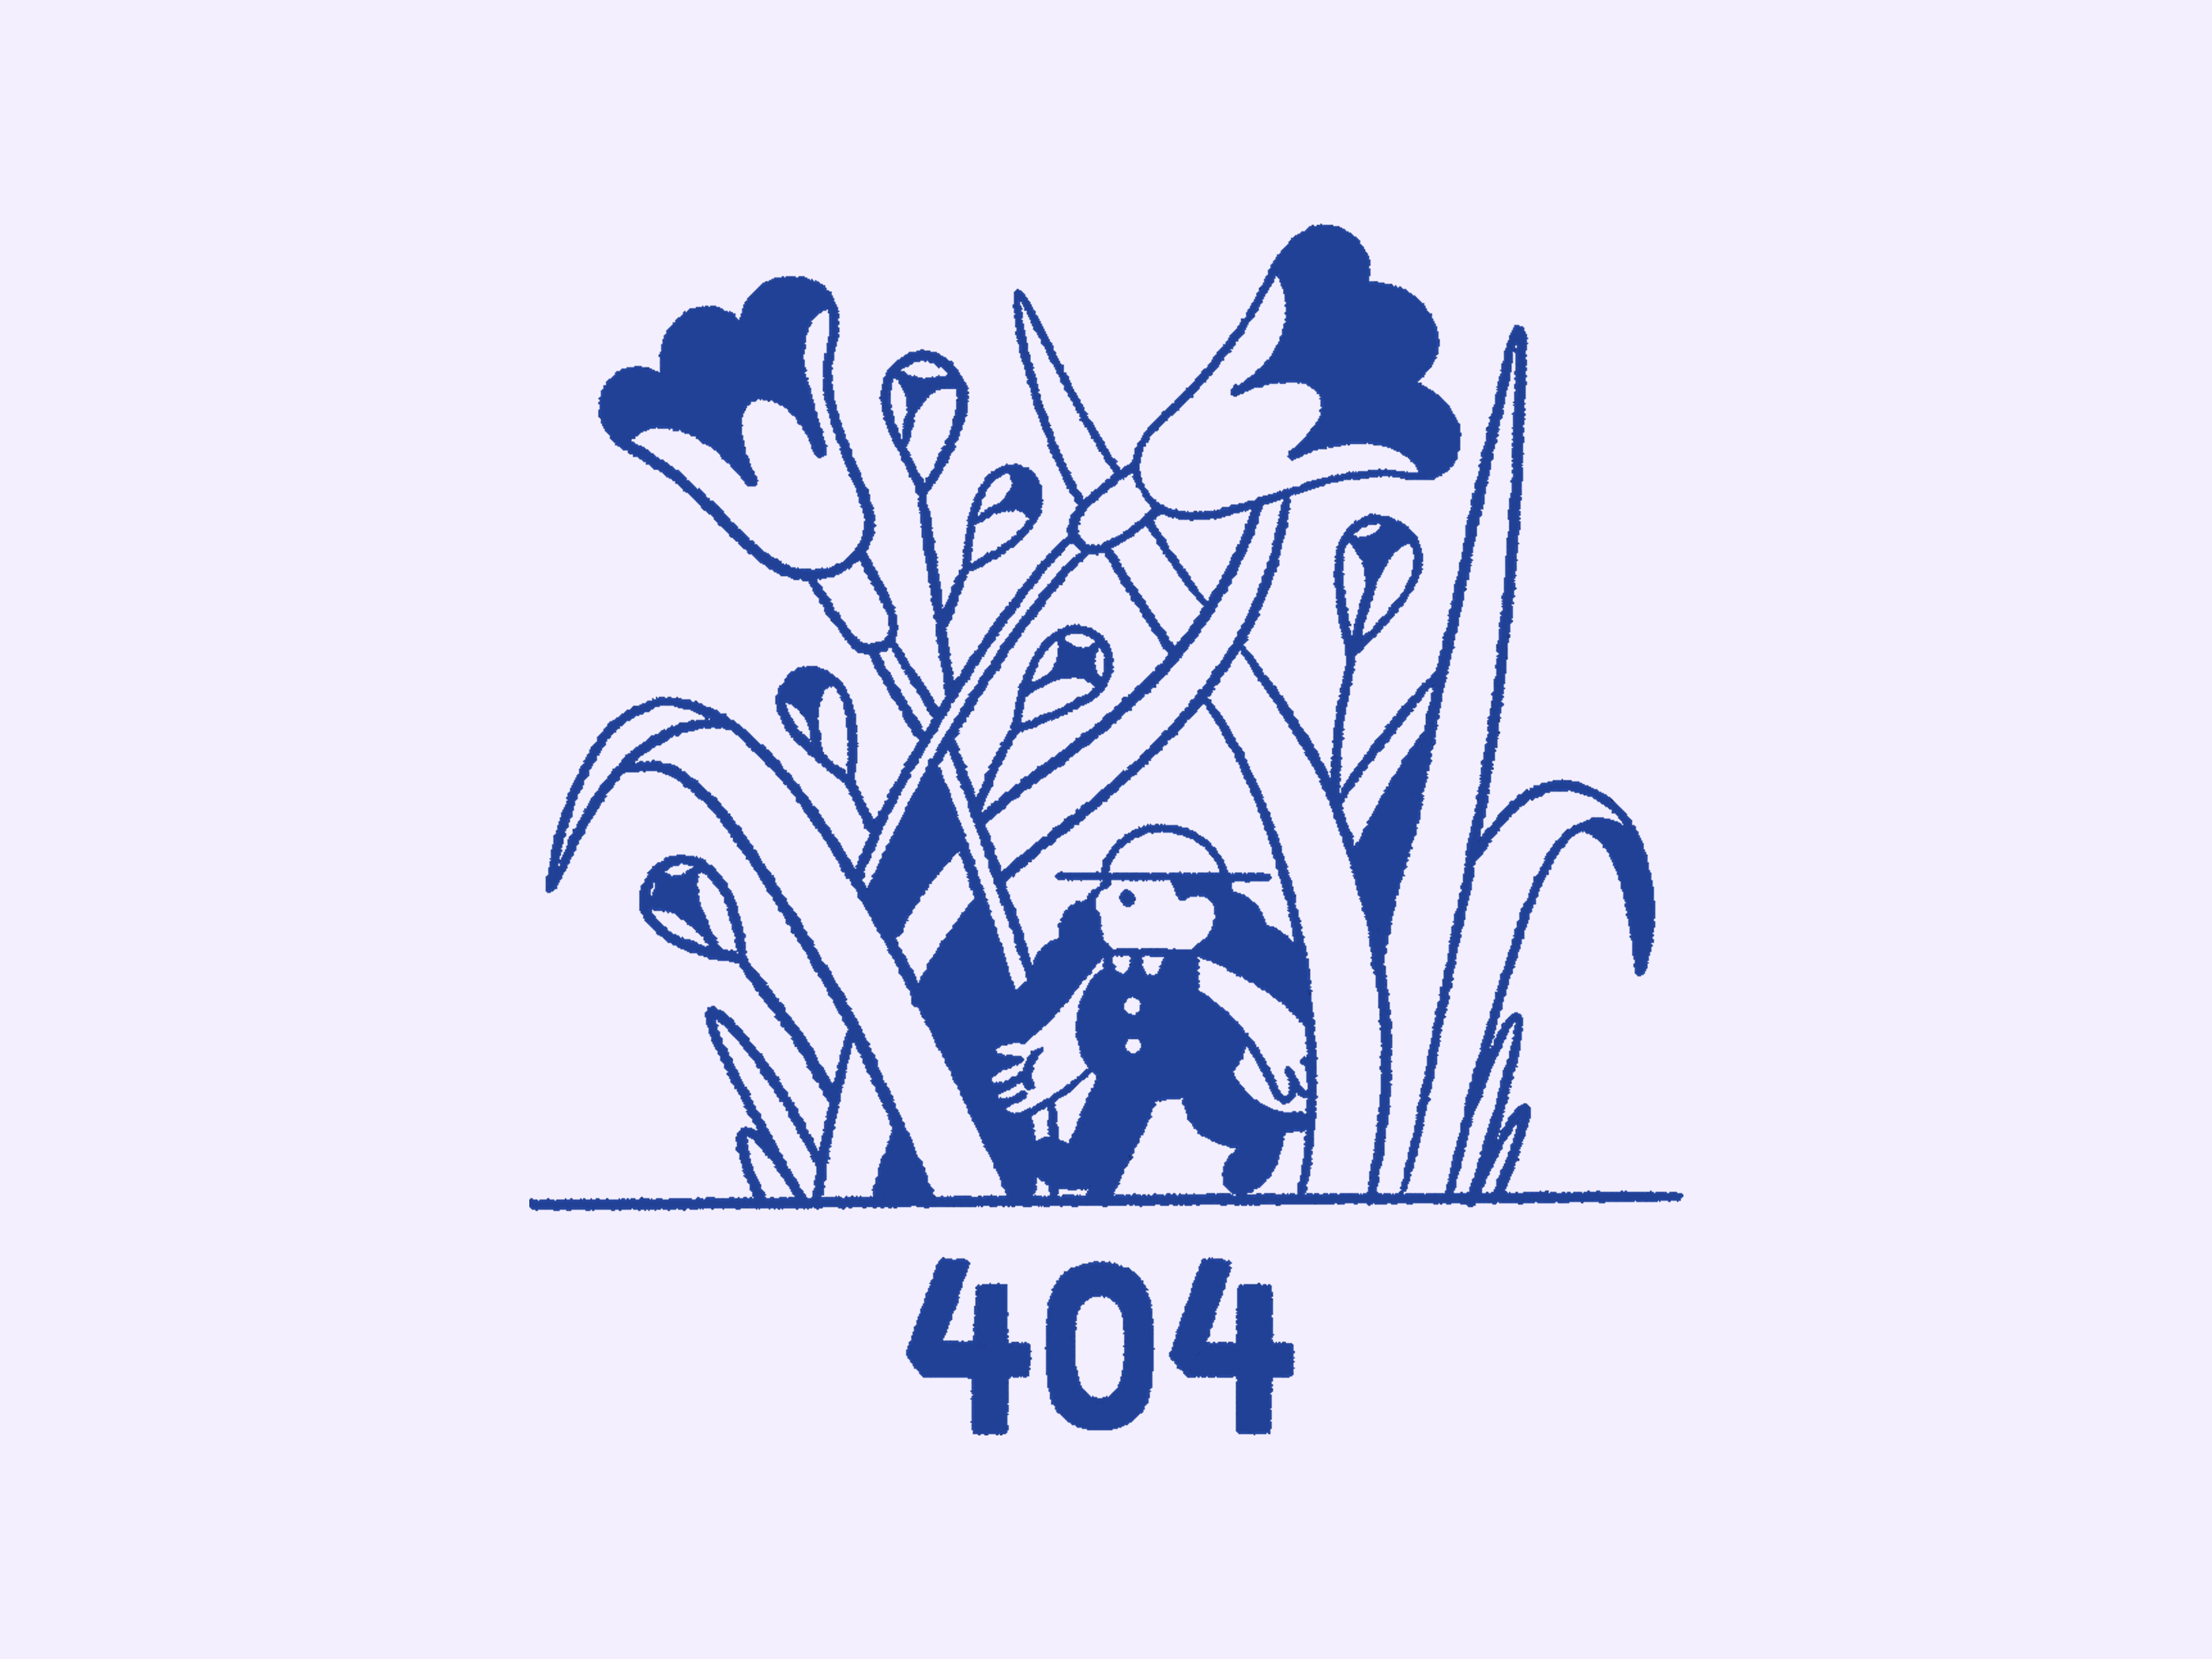 404 forest animation design frame by frame illustration illustration art illustration design illustrations illustrator